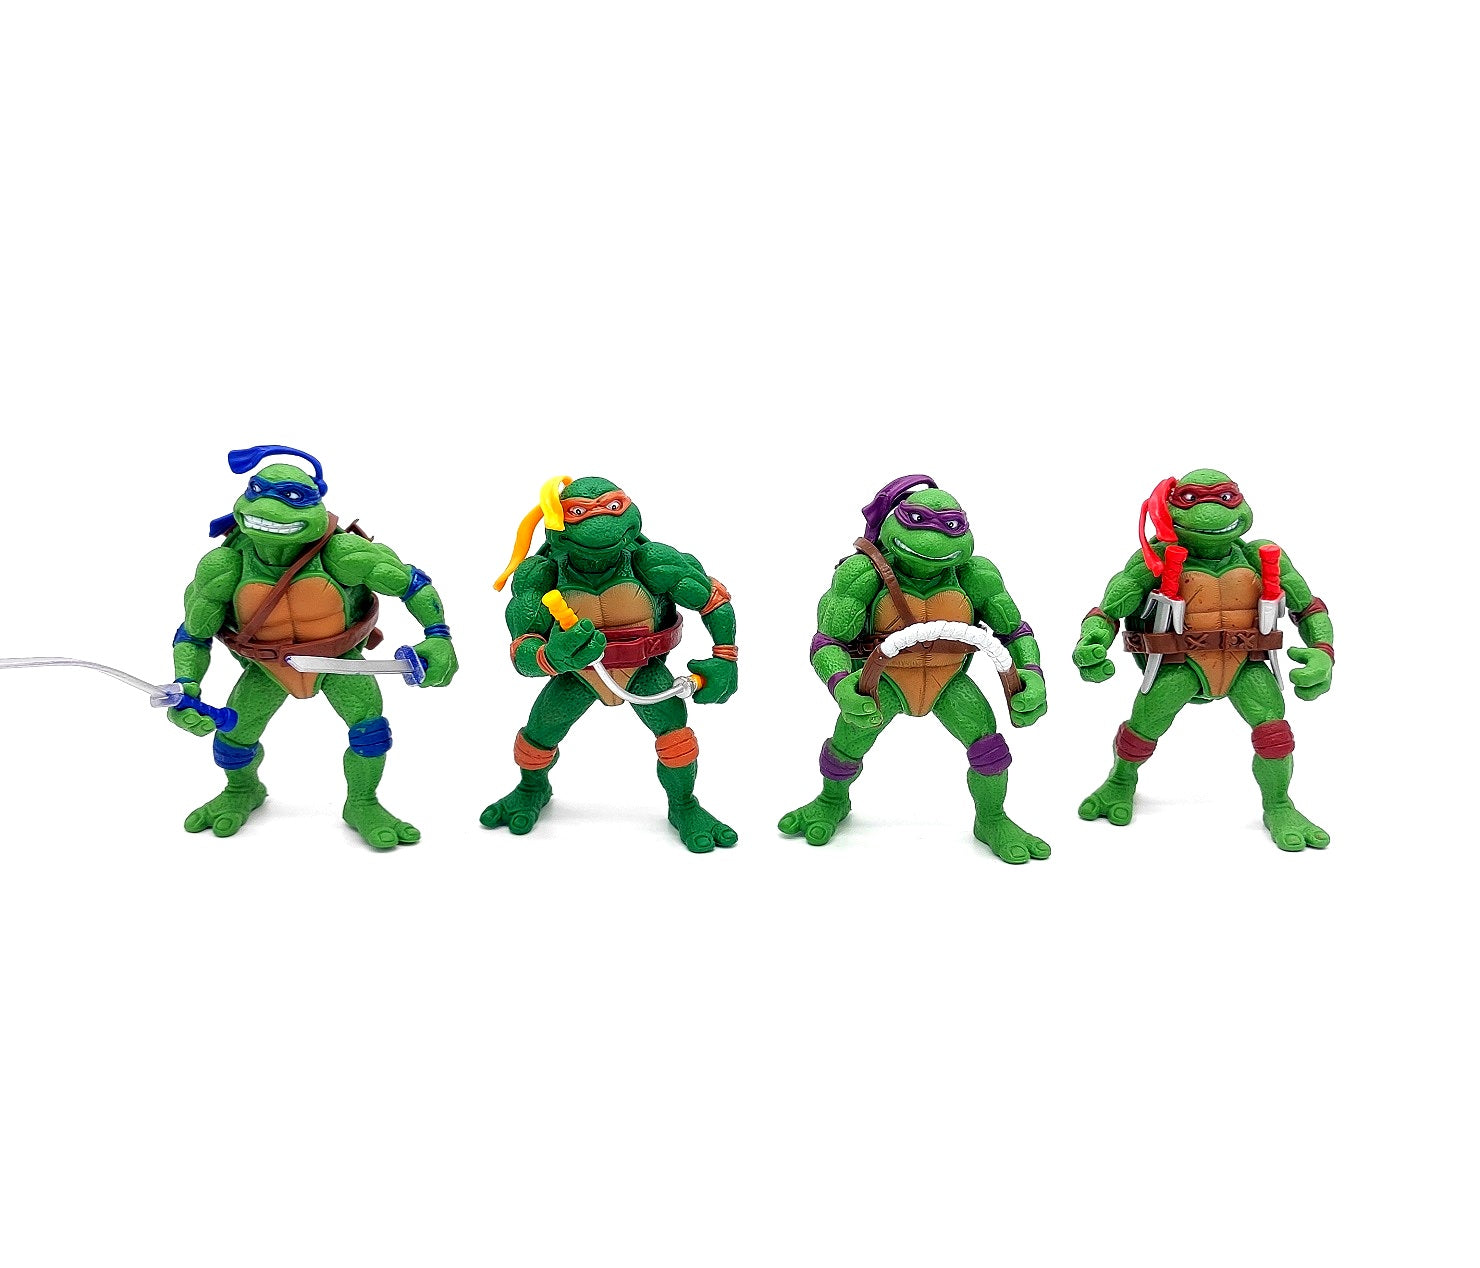 Teenage Mutant Ninja Turtles Mike Raph Leo Don Set of 4 Action Figure| 10 cms |